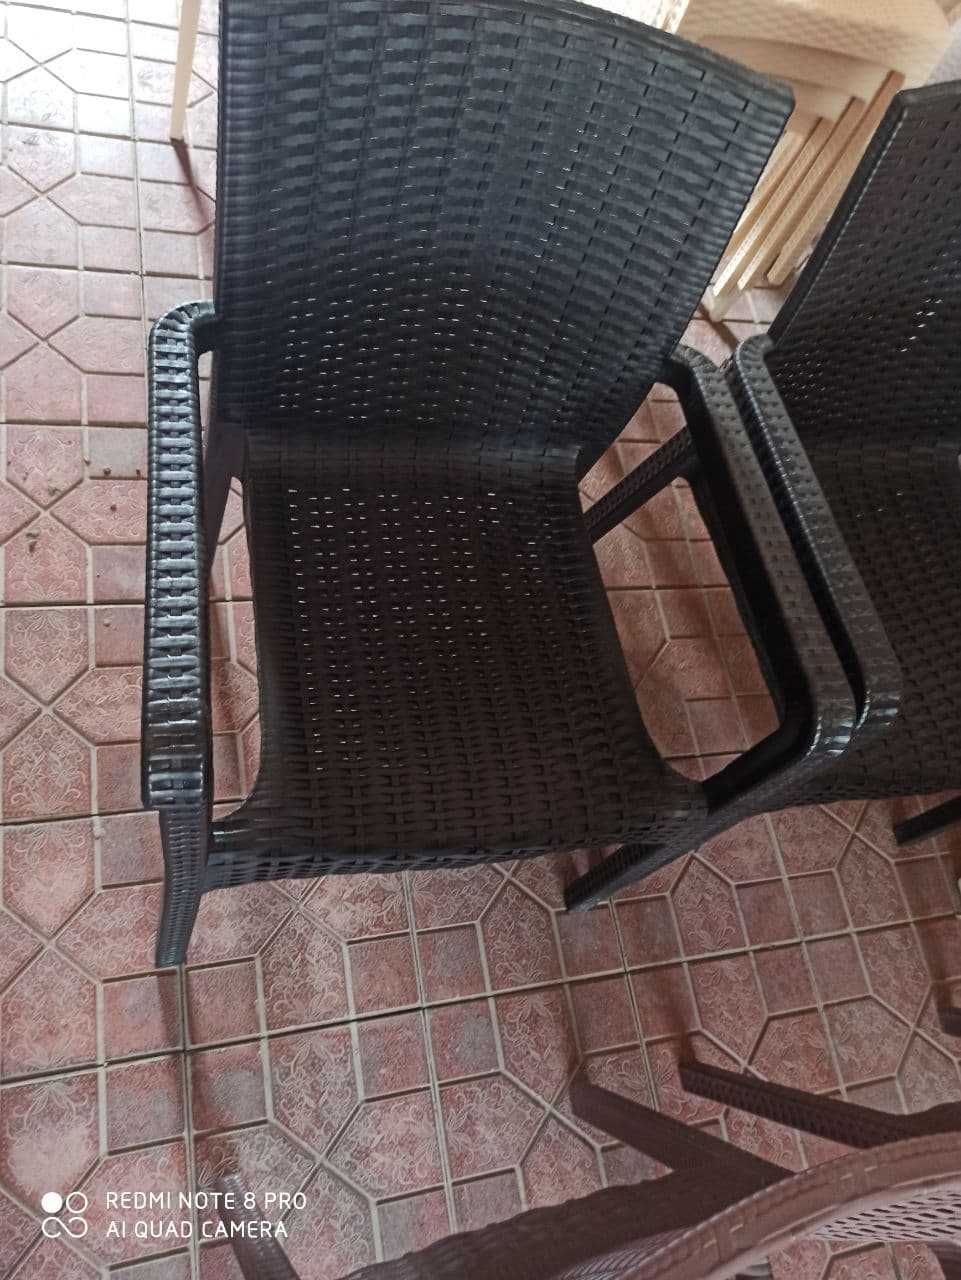 Качественные плетёные столы со стульями для дачи и кафе